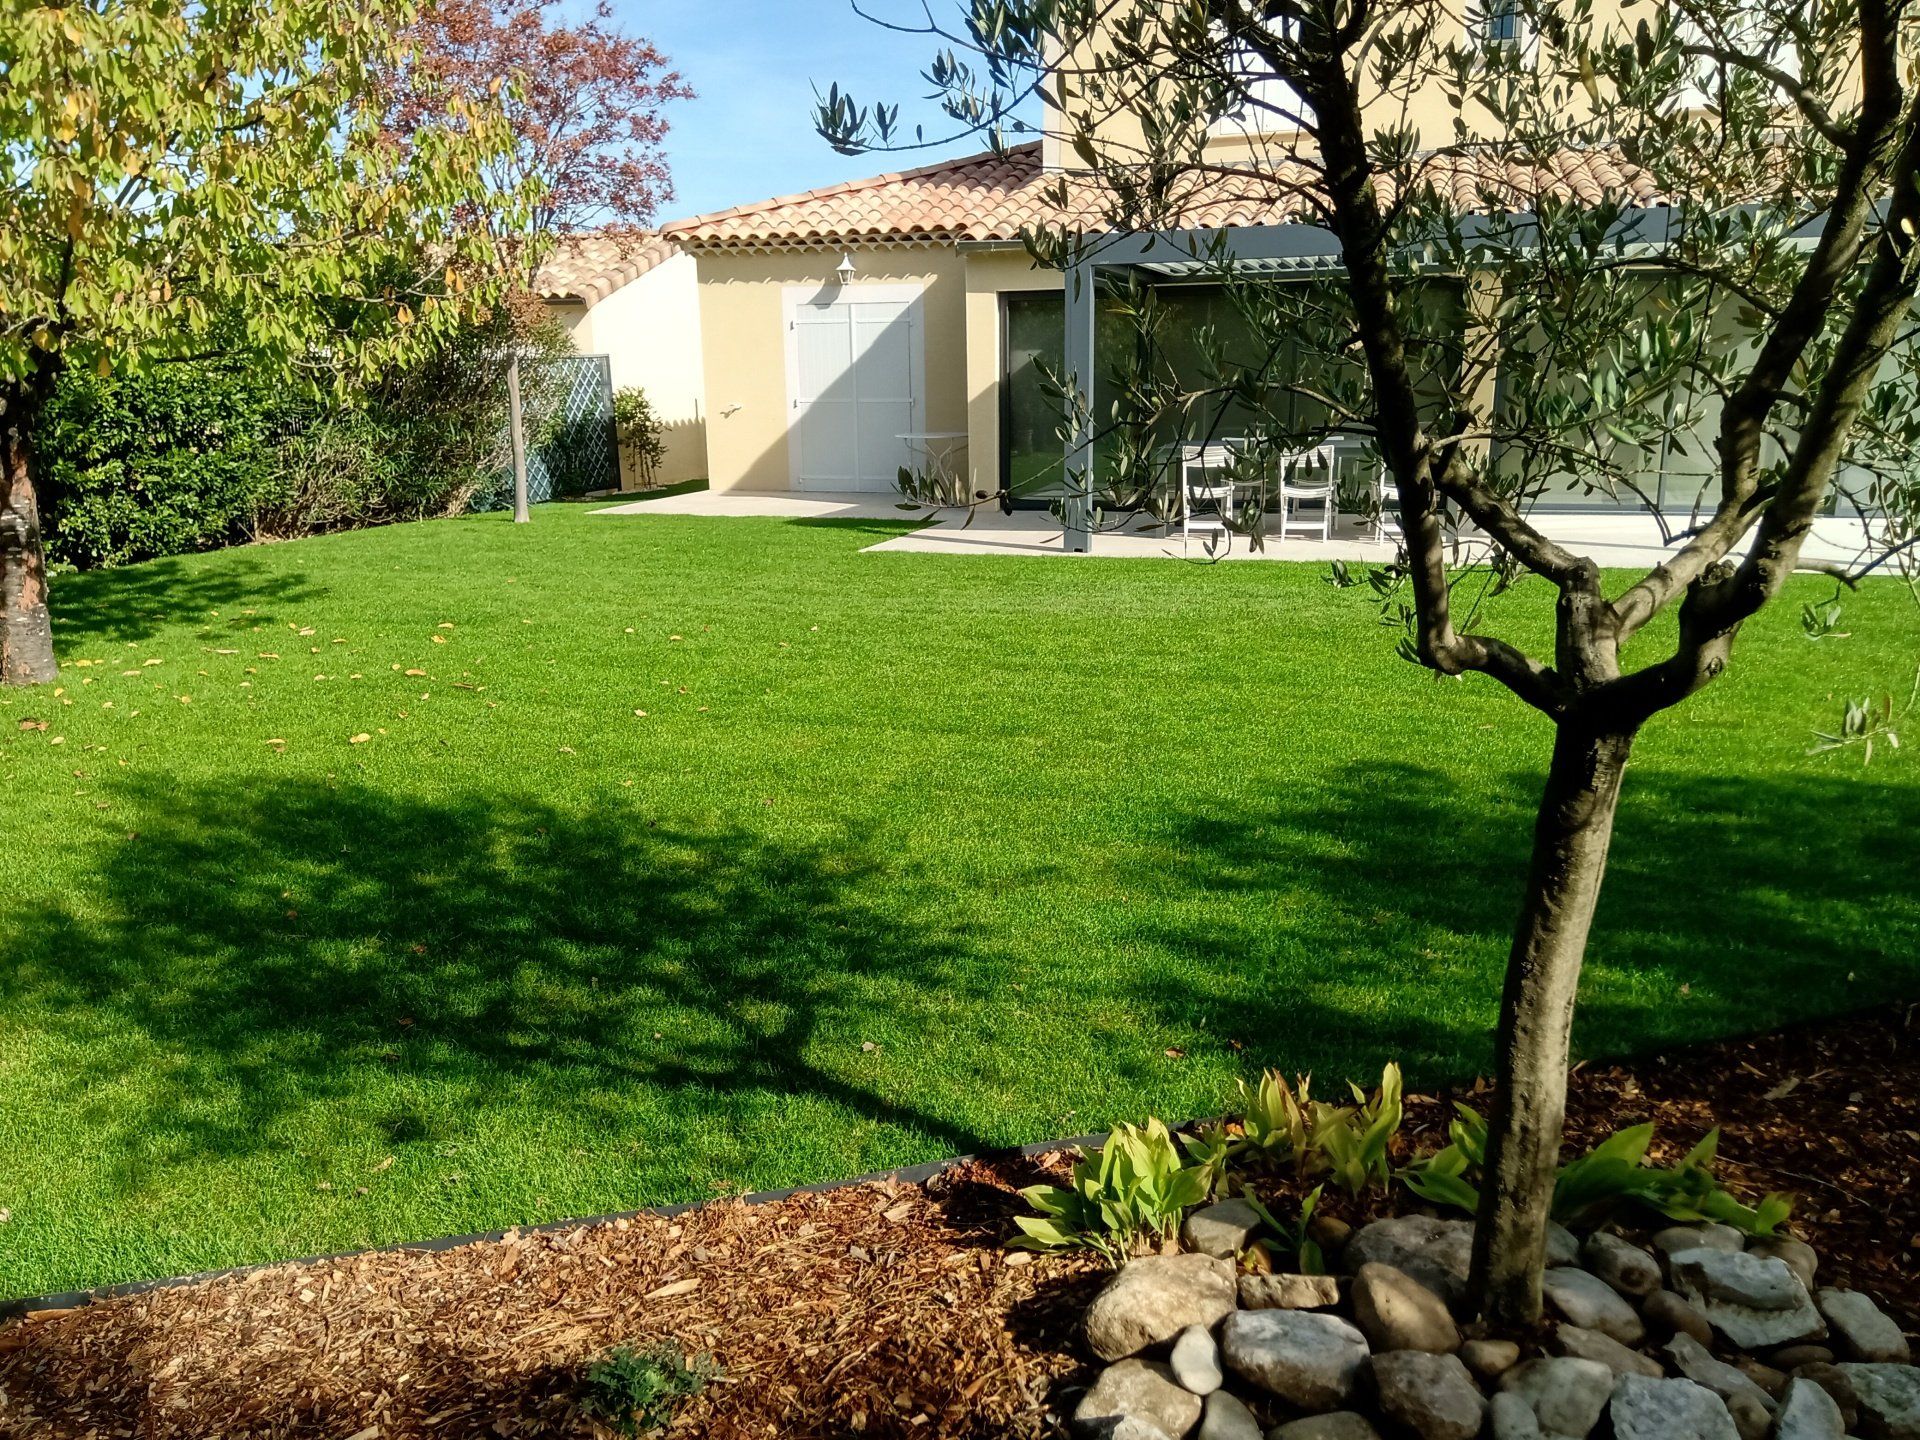 Terrain recouvert d'une pelouse verte en bordure d'une terrasse